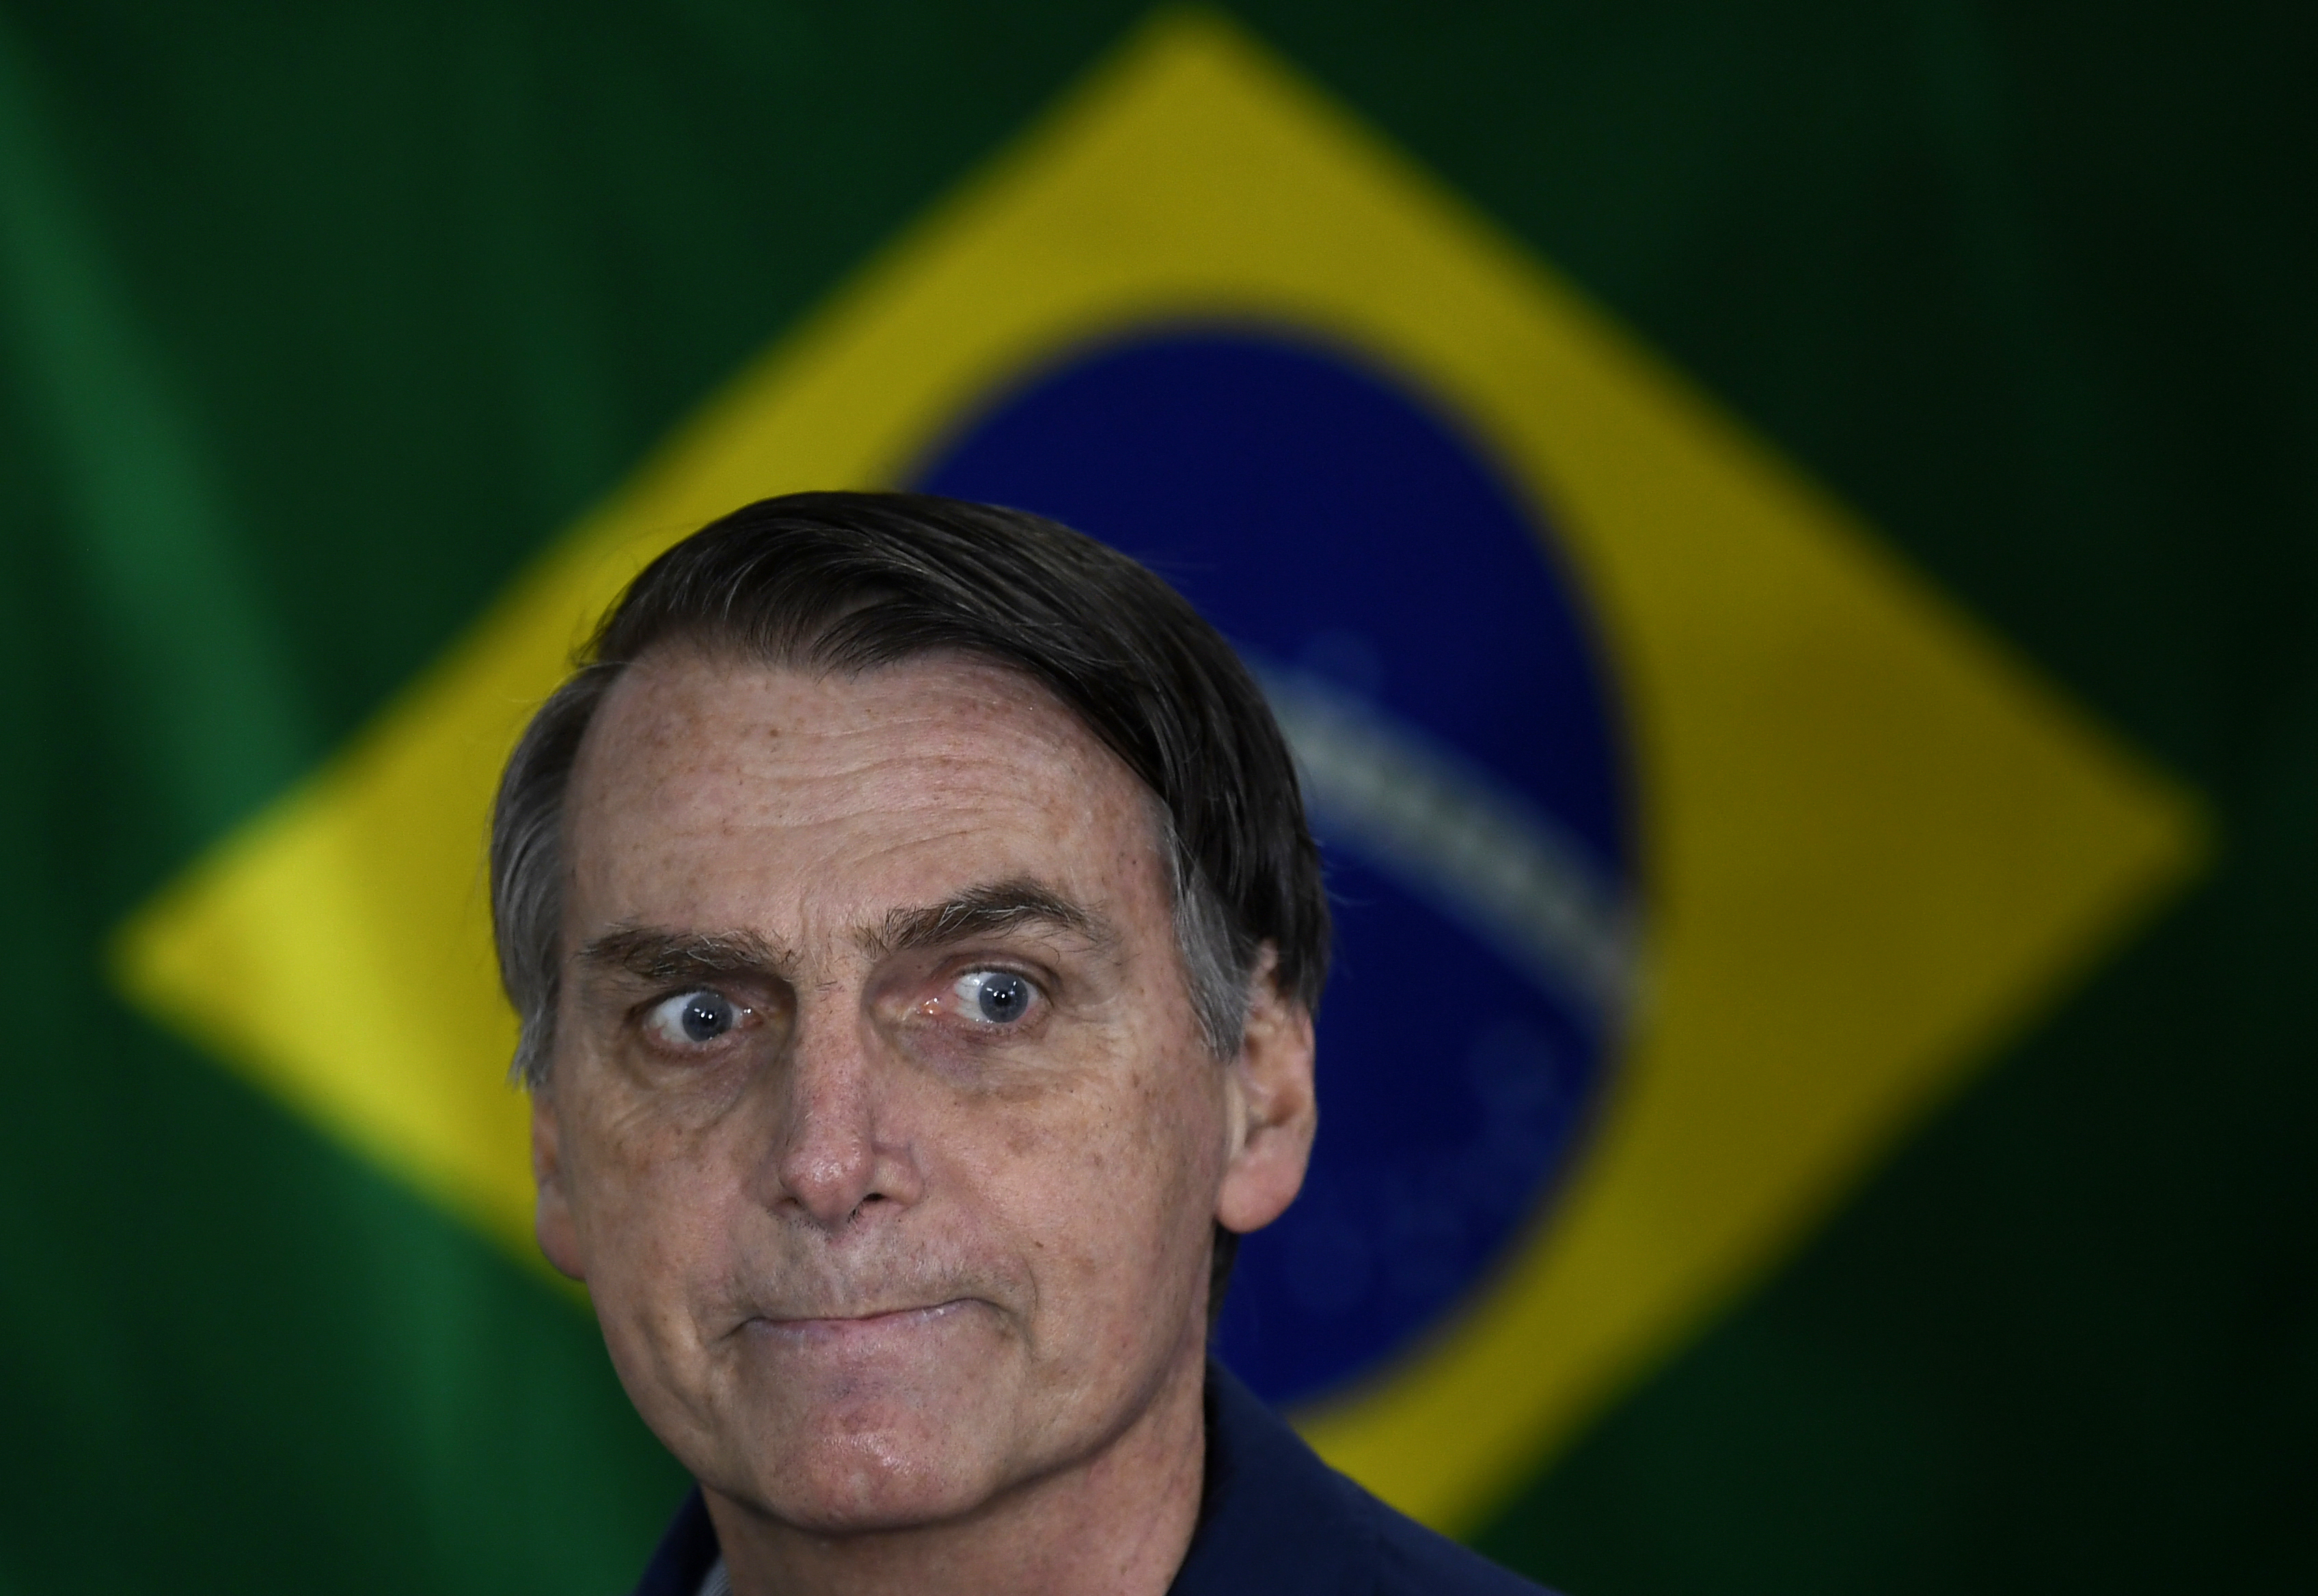 Bolsonaro kész tárgyalni arról, hogy amerikai katonai támaszpont létesüljön Brazíliában